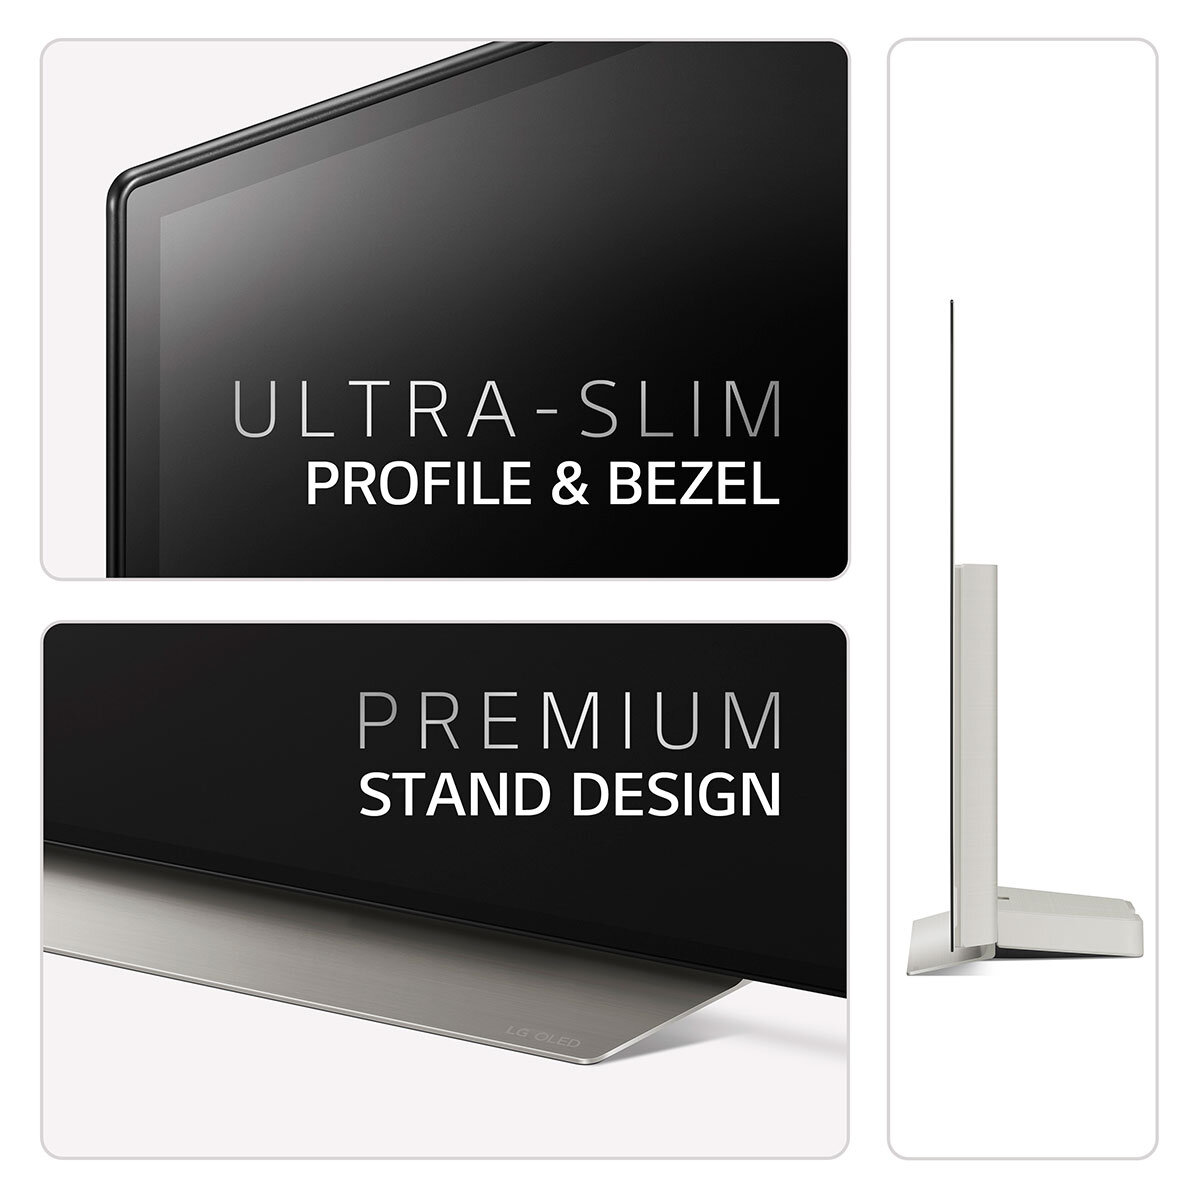 Buy LG OLED48C26LB 48 inch OLED 4K Ultra HD Smart TV at Costco.co.uk